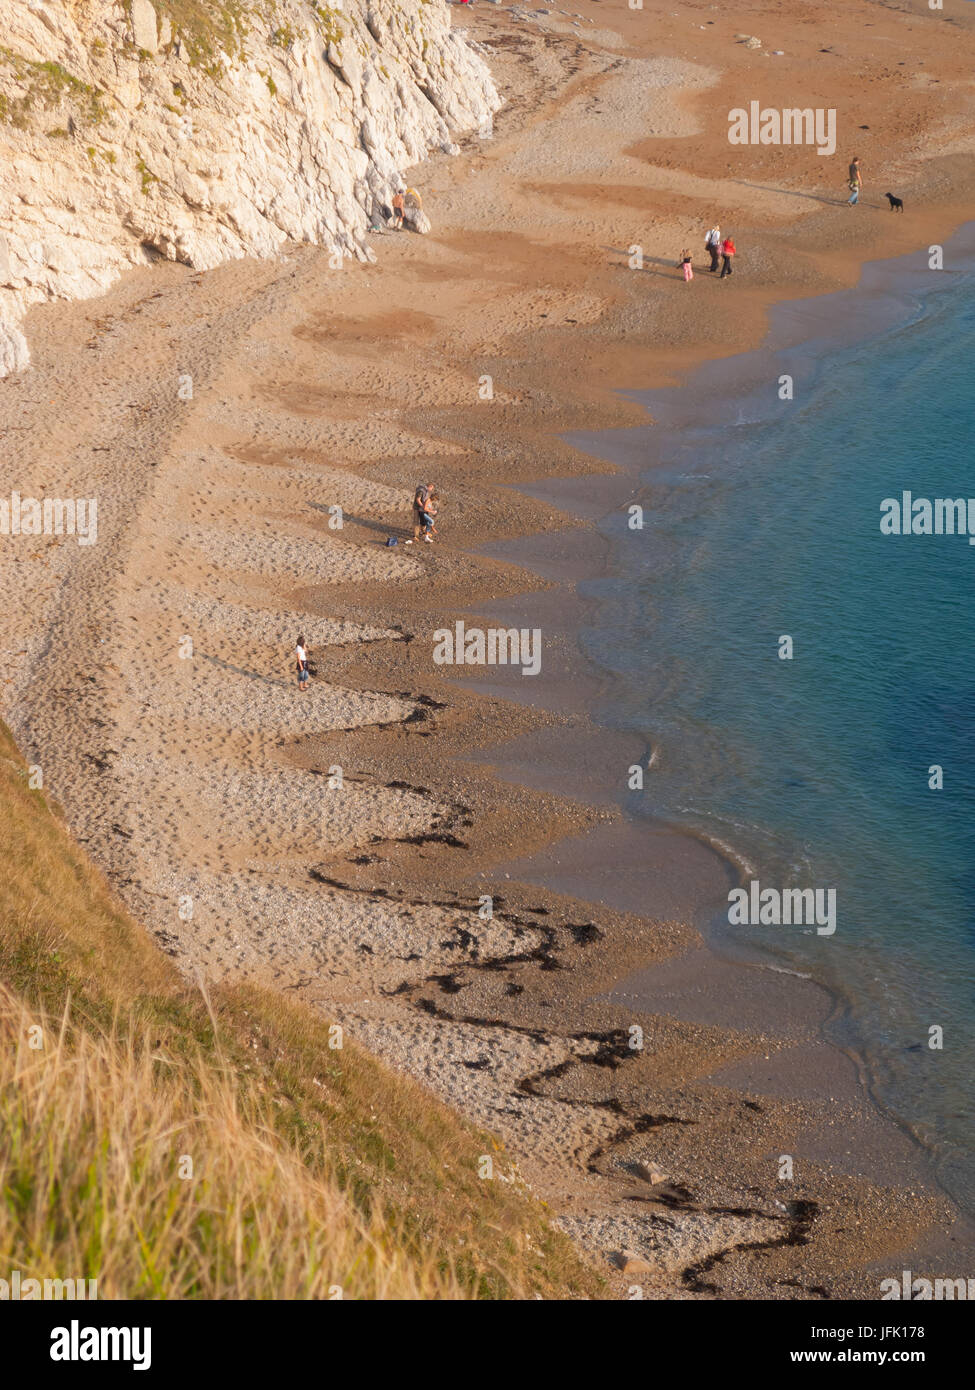 Man O' War Beach, Dorset, UK Stock Photo